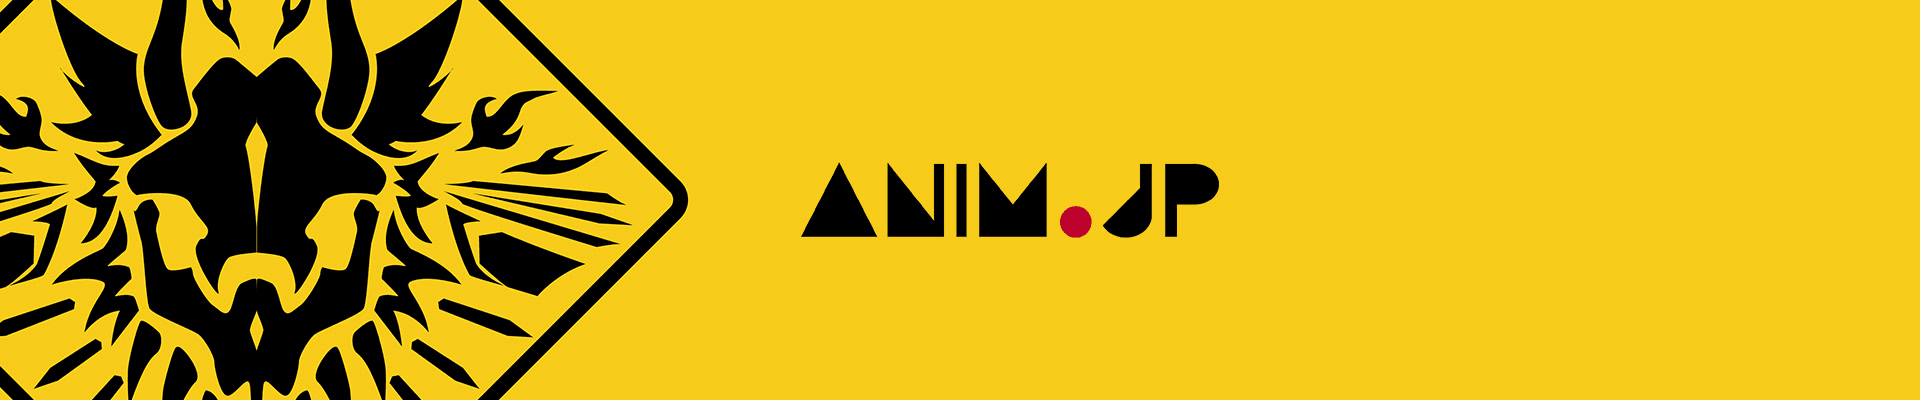 ANIM_JP_OFFICIAL banner